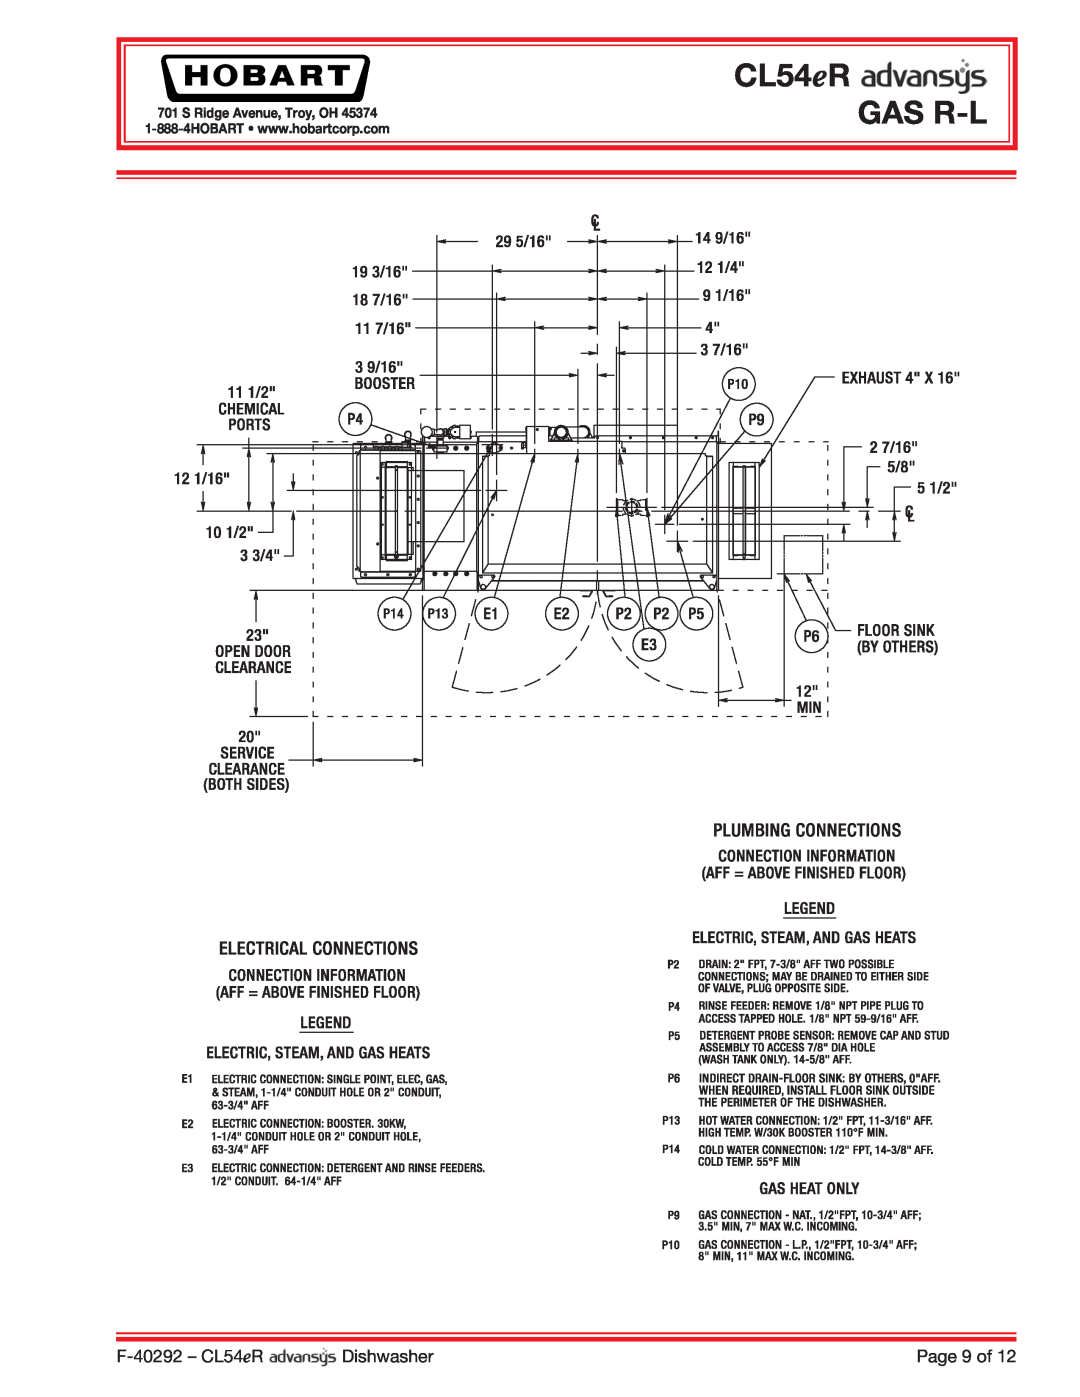 Hobart CL54ER dimensions CL54eR GAS R-L, F-40292- CL54eR, Dishwasher, Page 9 of, S Ridge Avenue, Troy, OH 